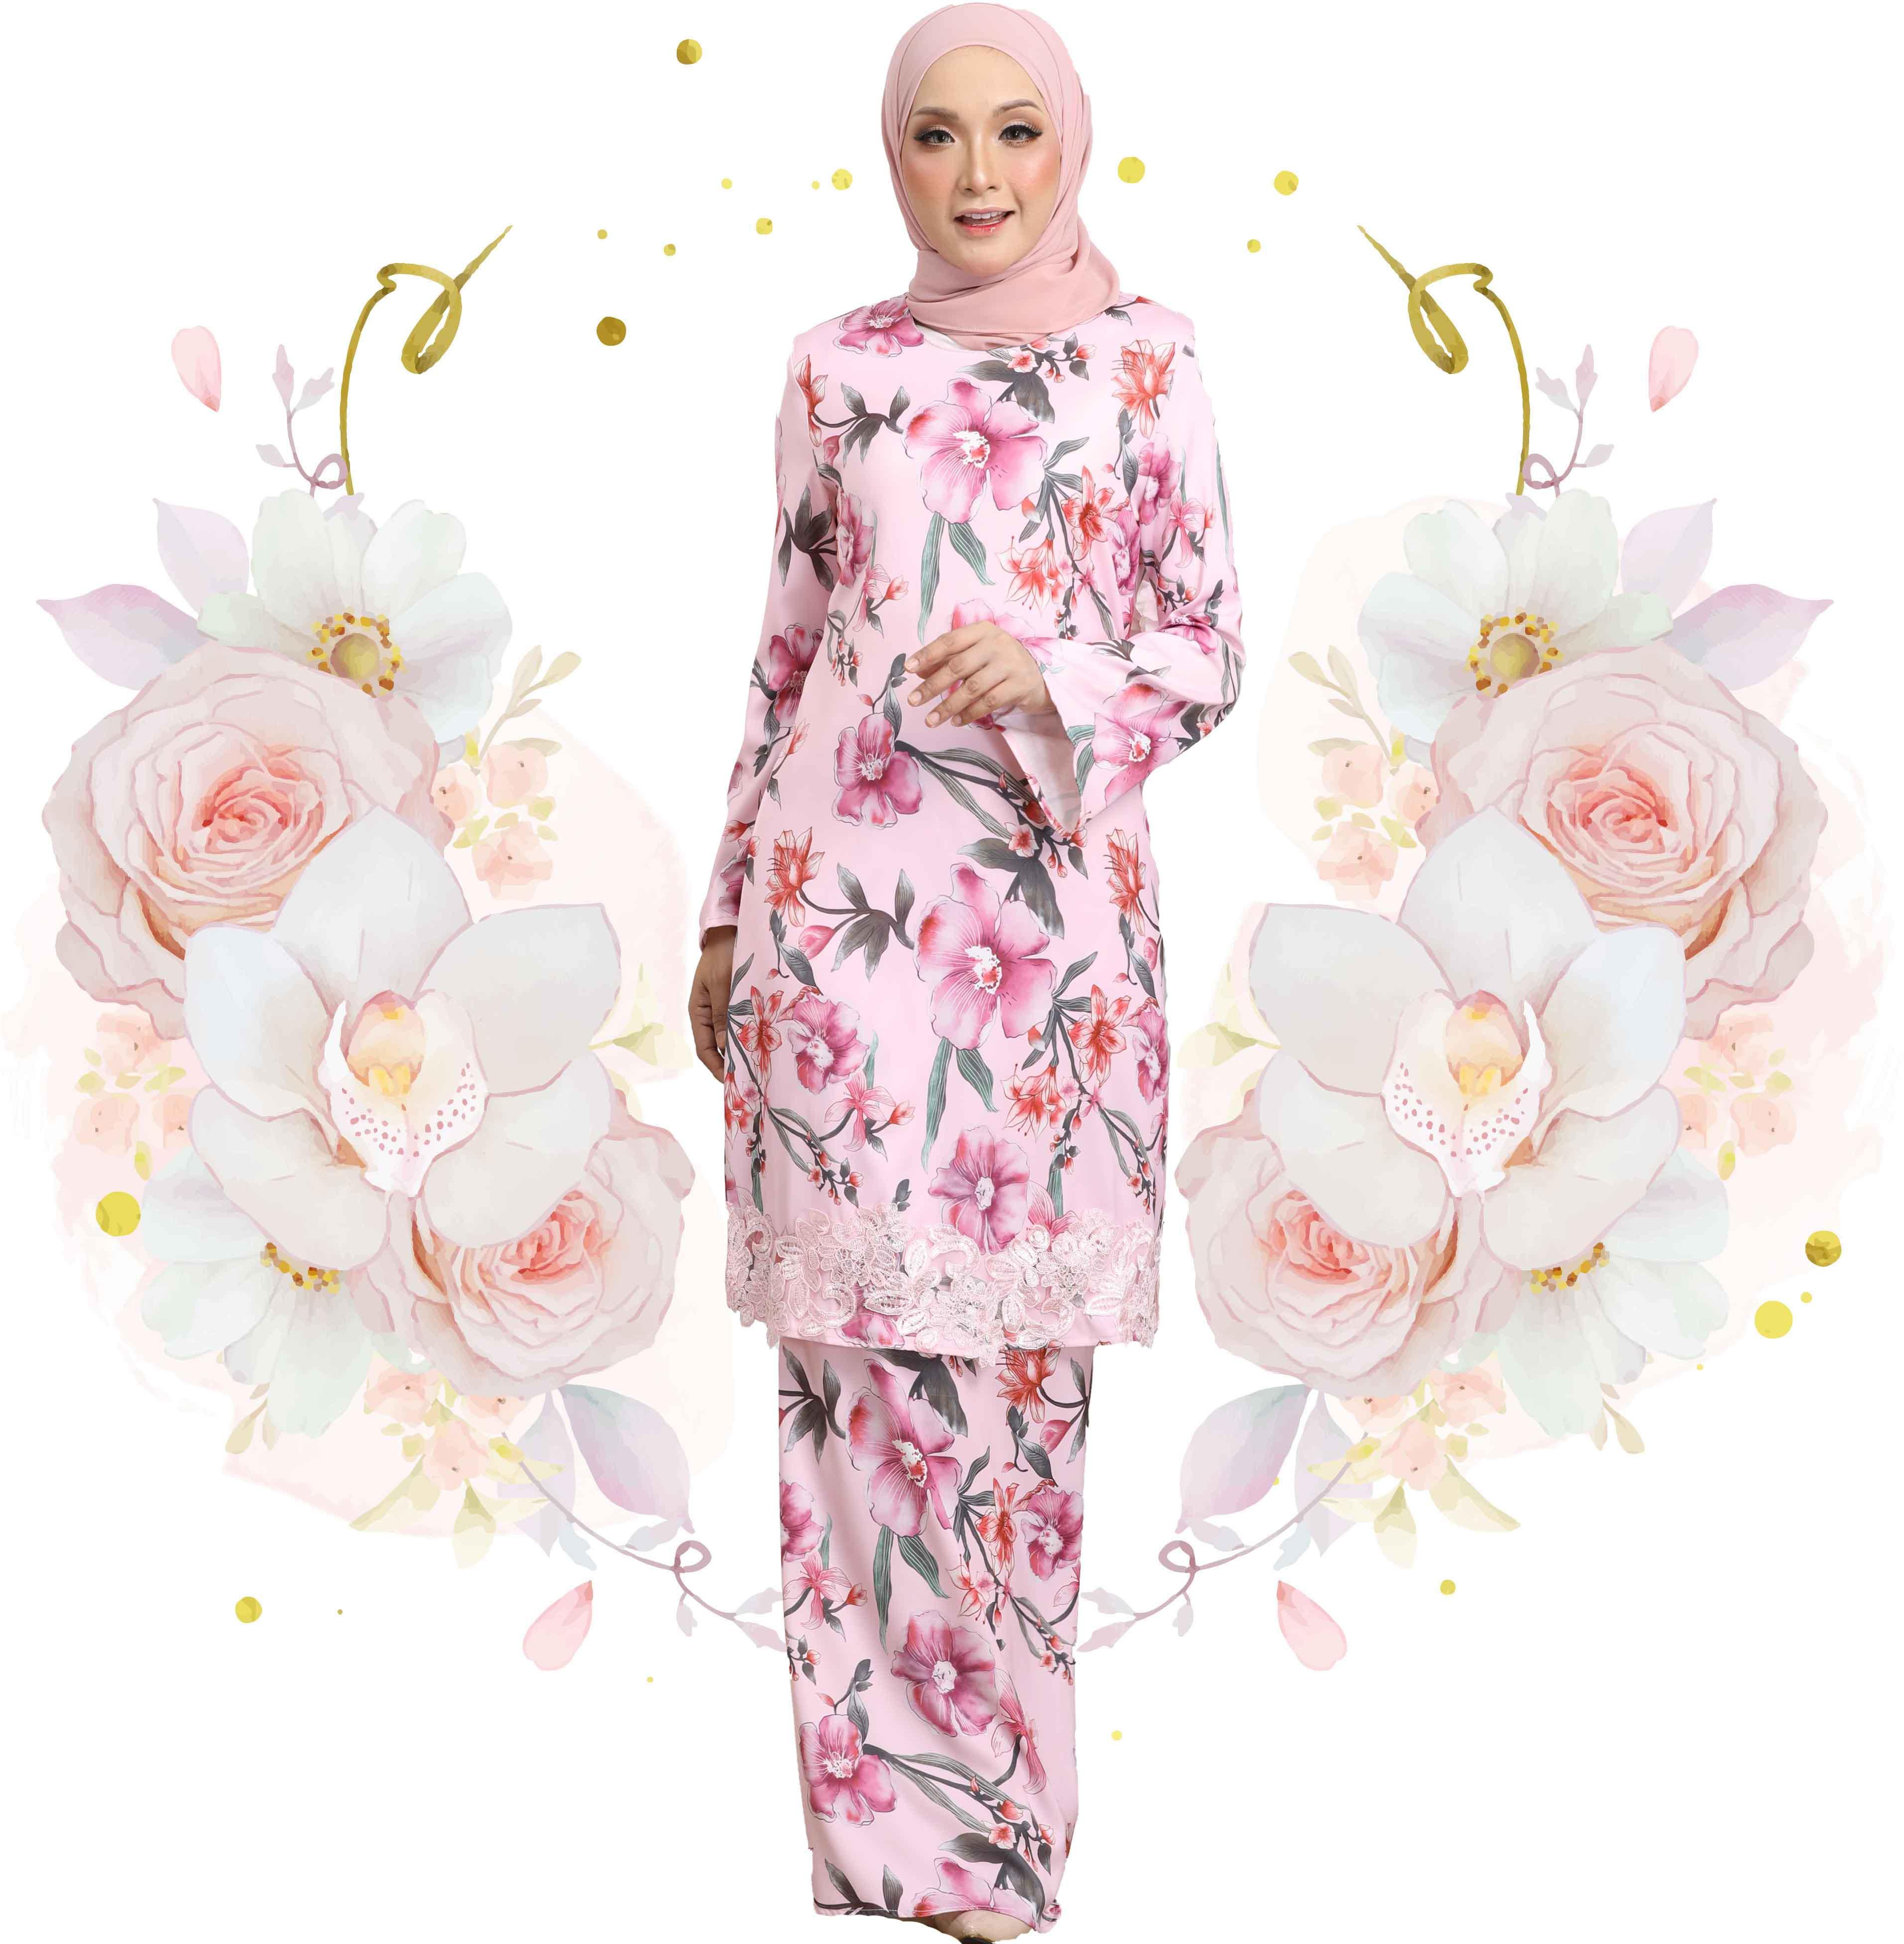 ERA MAYA Elegant Orchids Floral Baju Kurung Moden with Lace Hem (Pink)